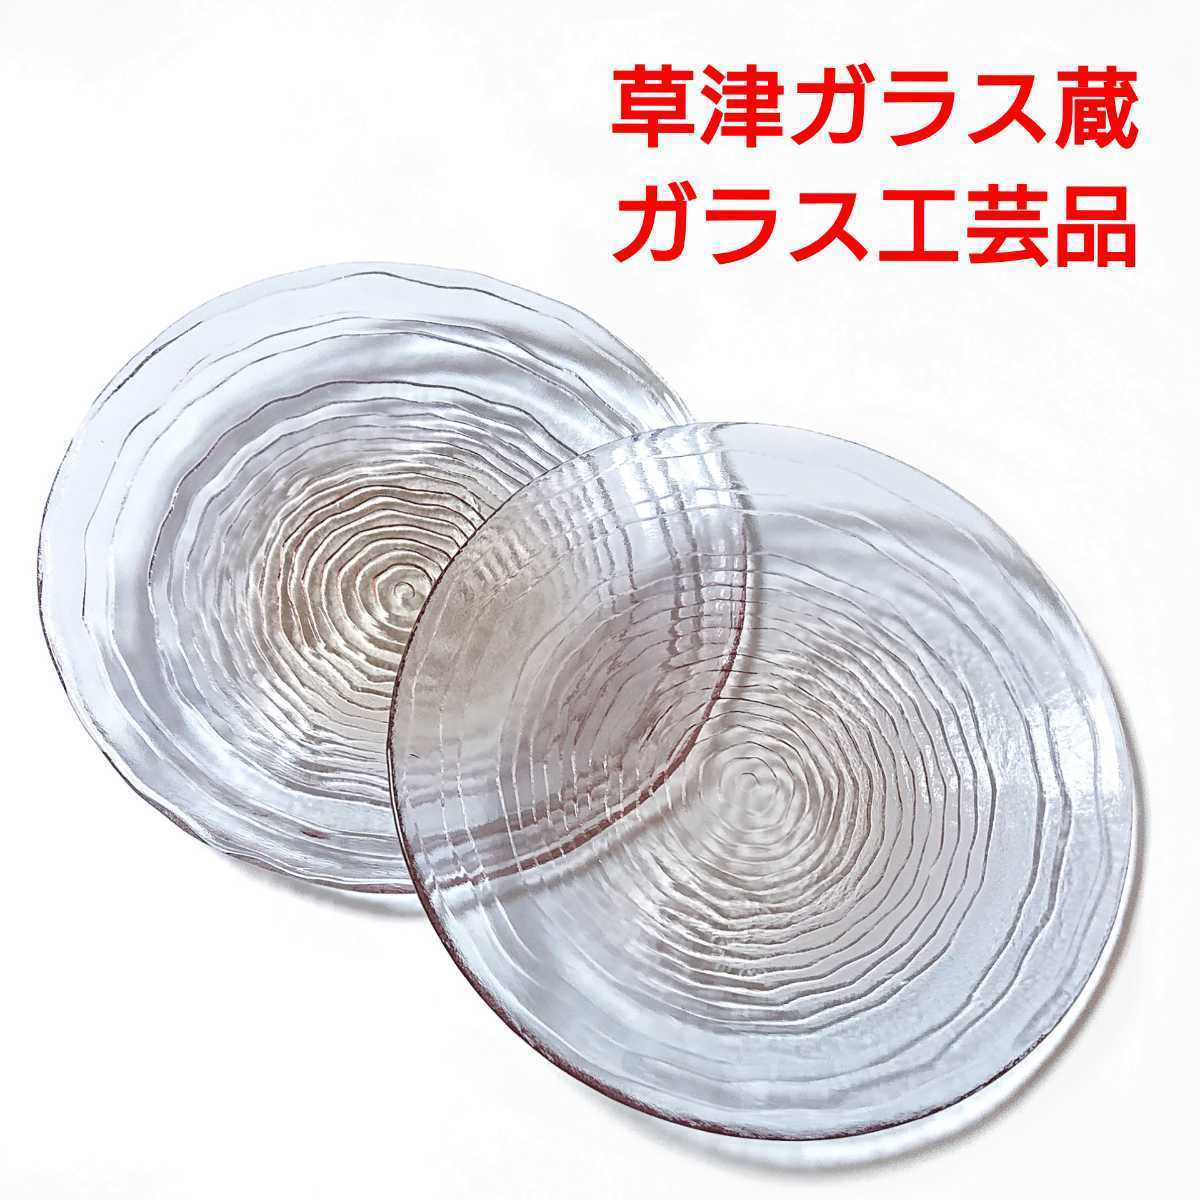 Kusatsu Onsen/Kusatsu Glass Warehouse/Glass crafts/Glass plate/Handmade/Blue, Western-style tableware, plate, dish, others